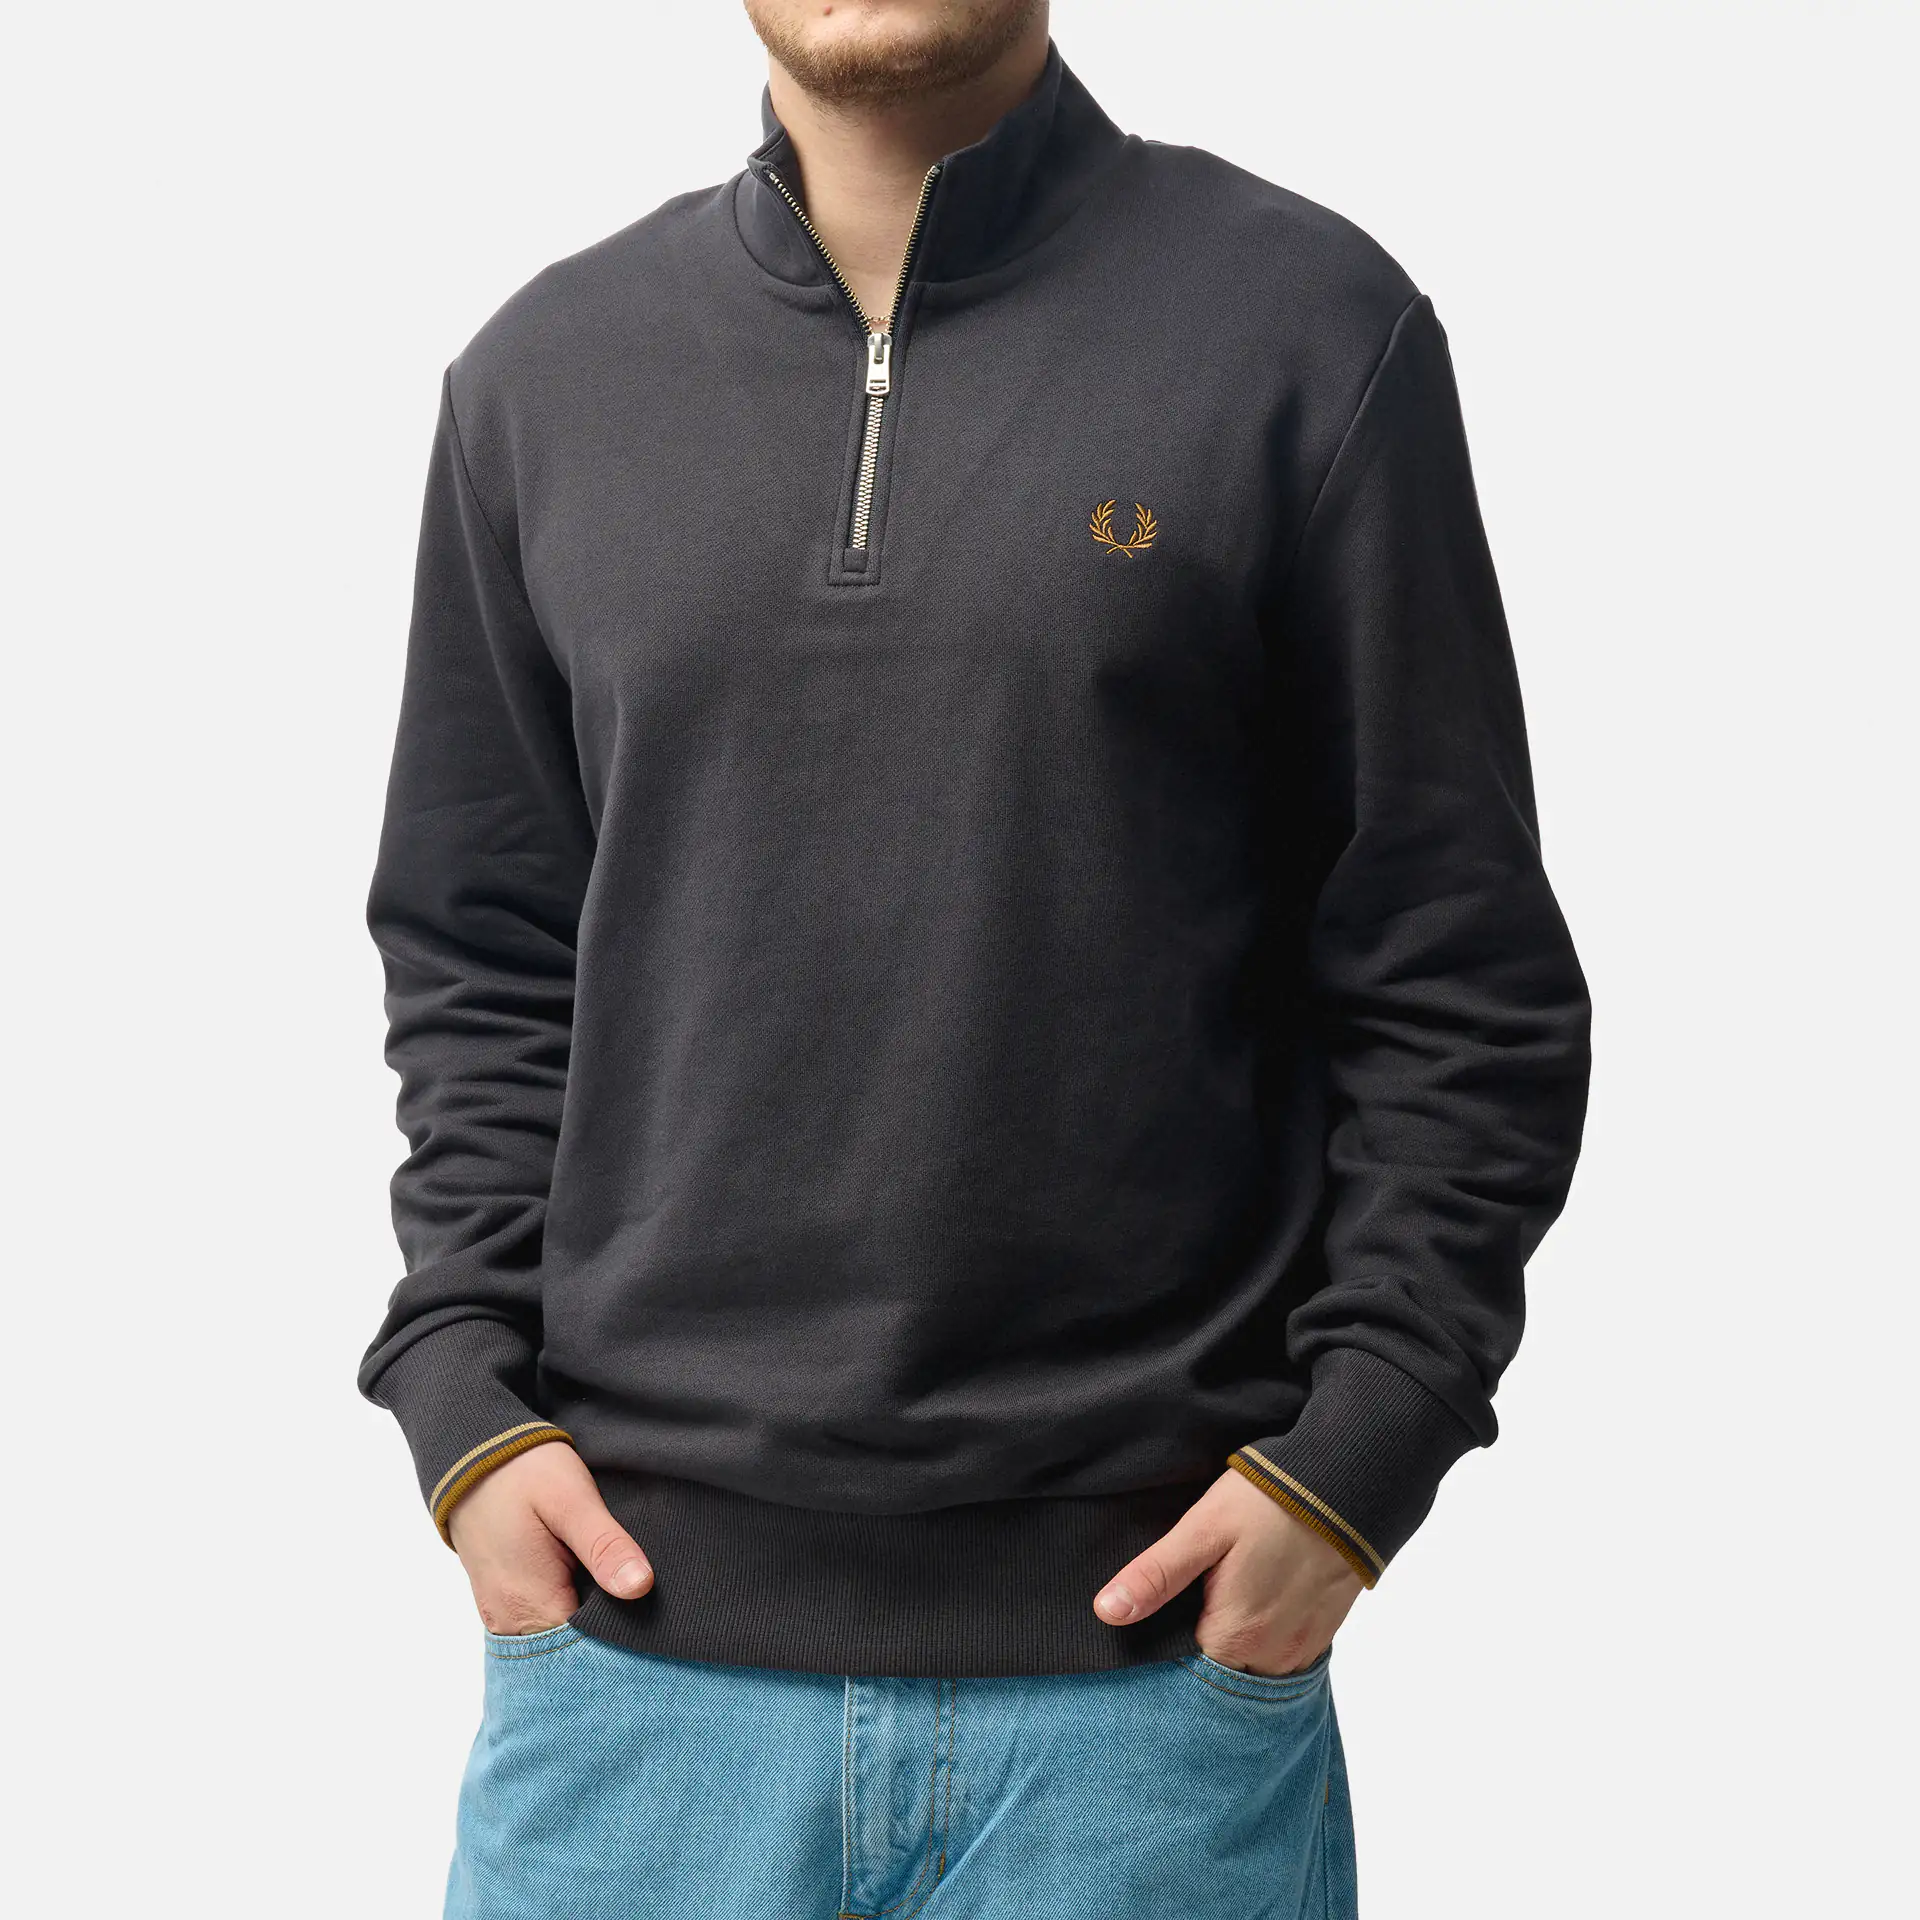 Pullover für Männer online kaufen bei ✧ FAST FORWARD